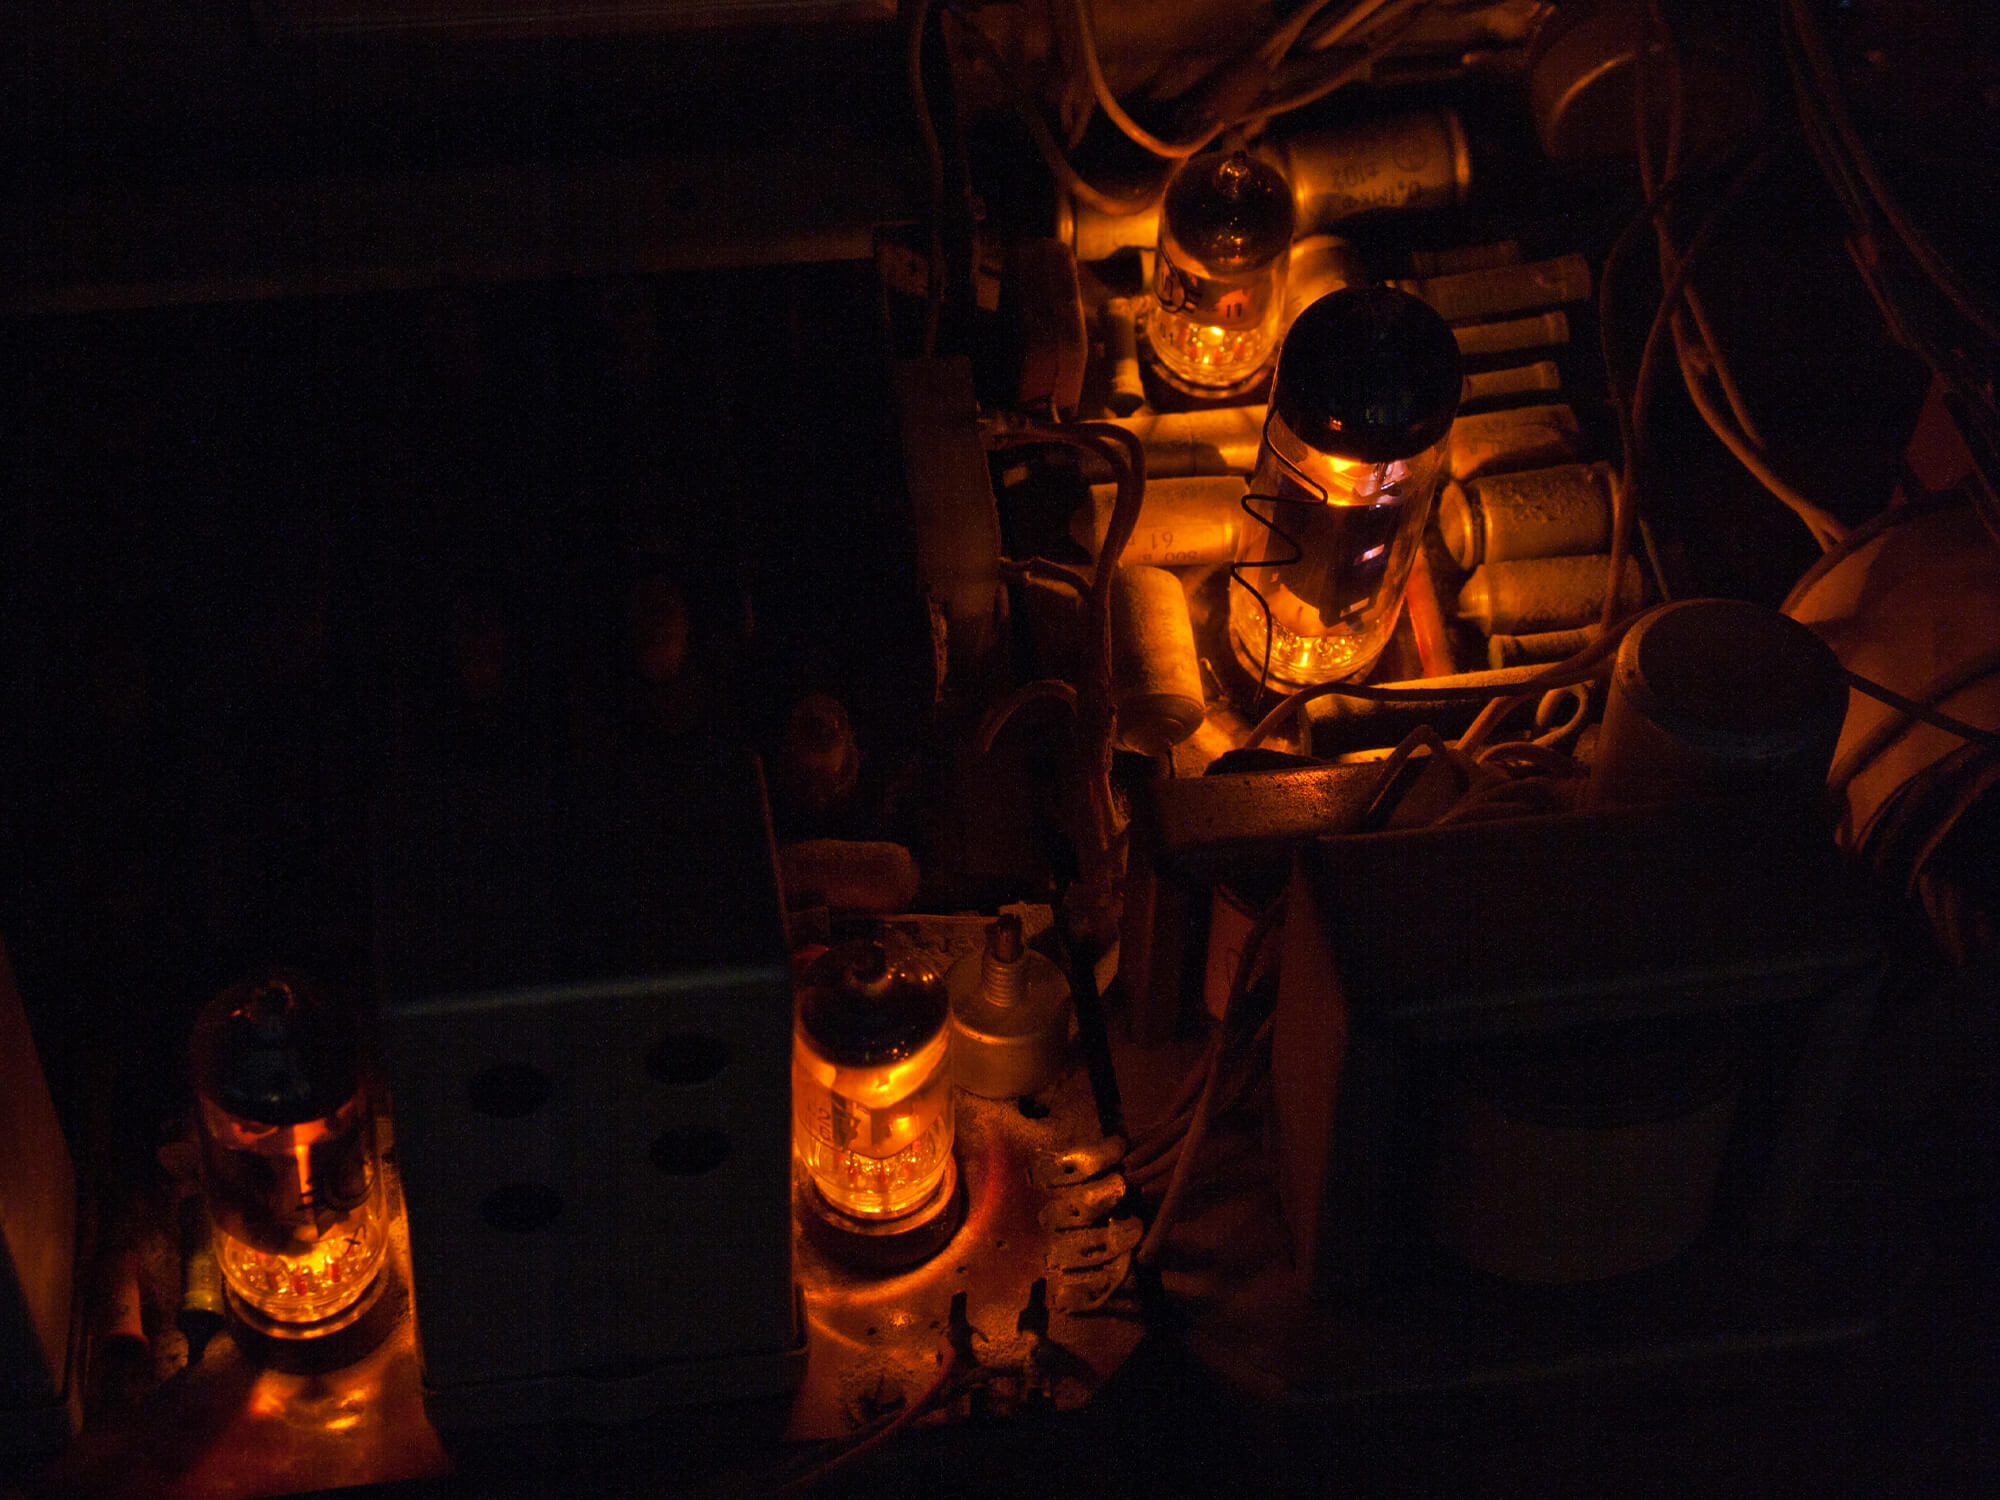 Several vacuum tubes, glowing